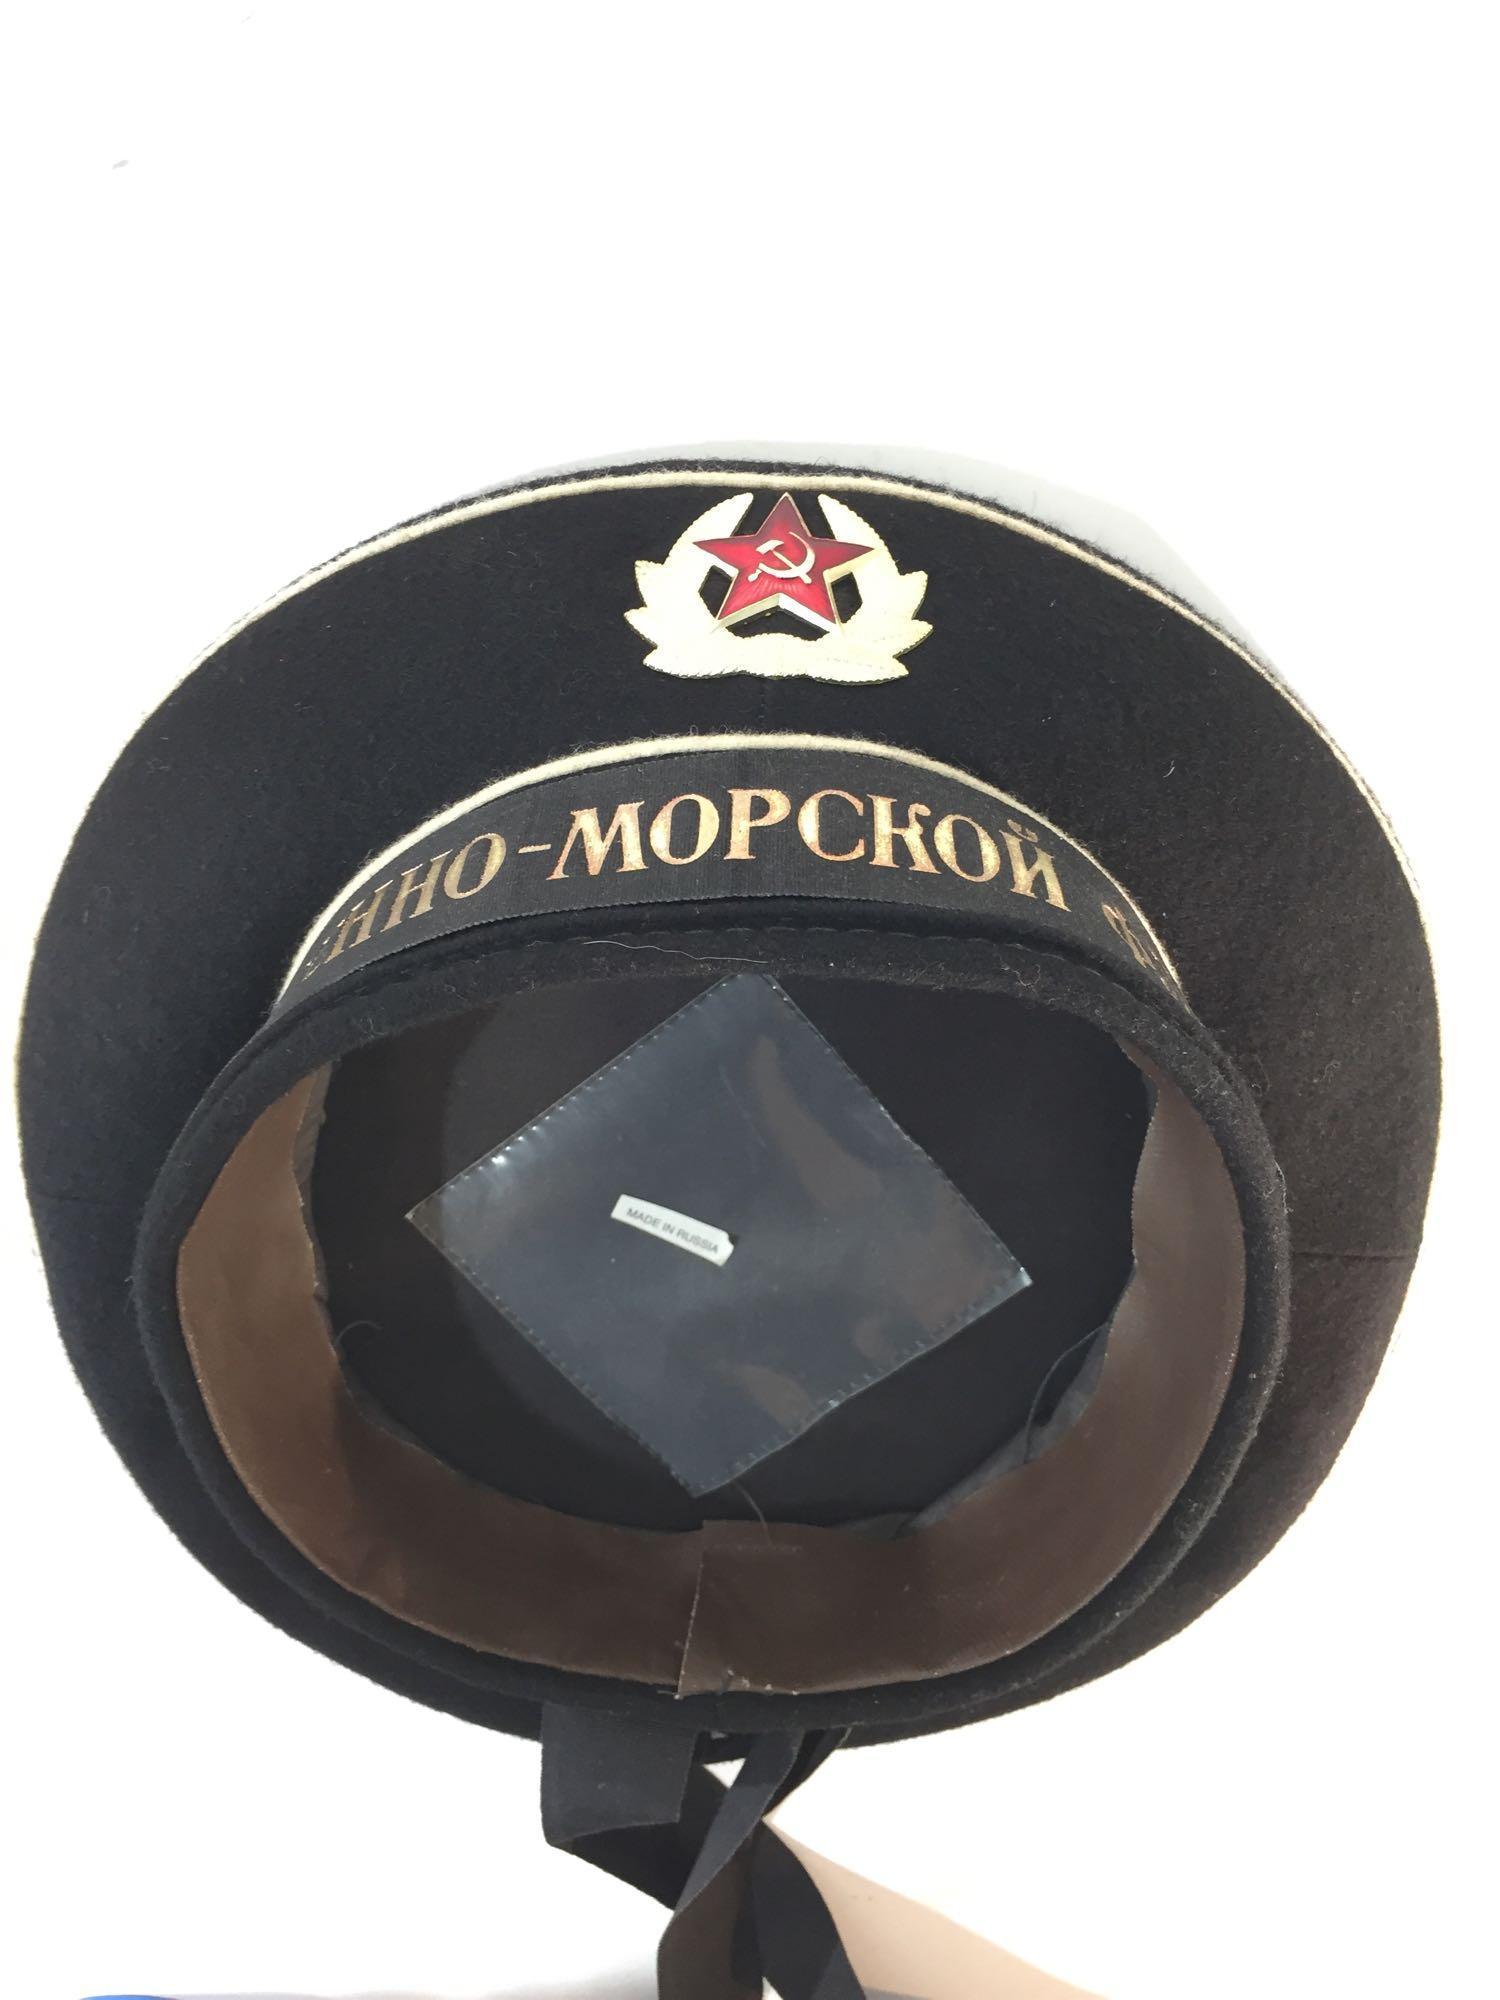 Boehho-Mopckon Pjlot Russian Navy Dress Hat